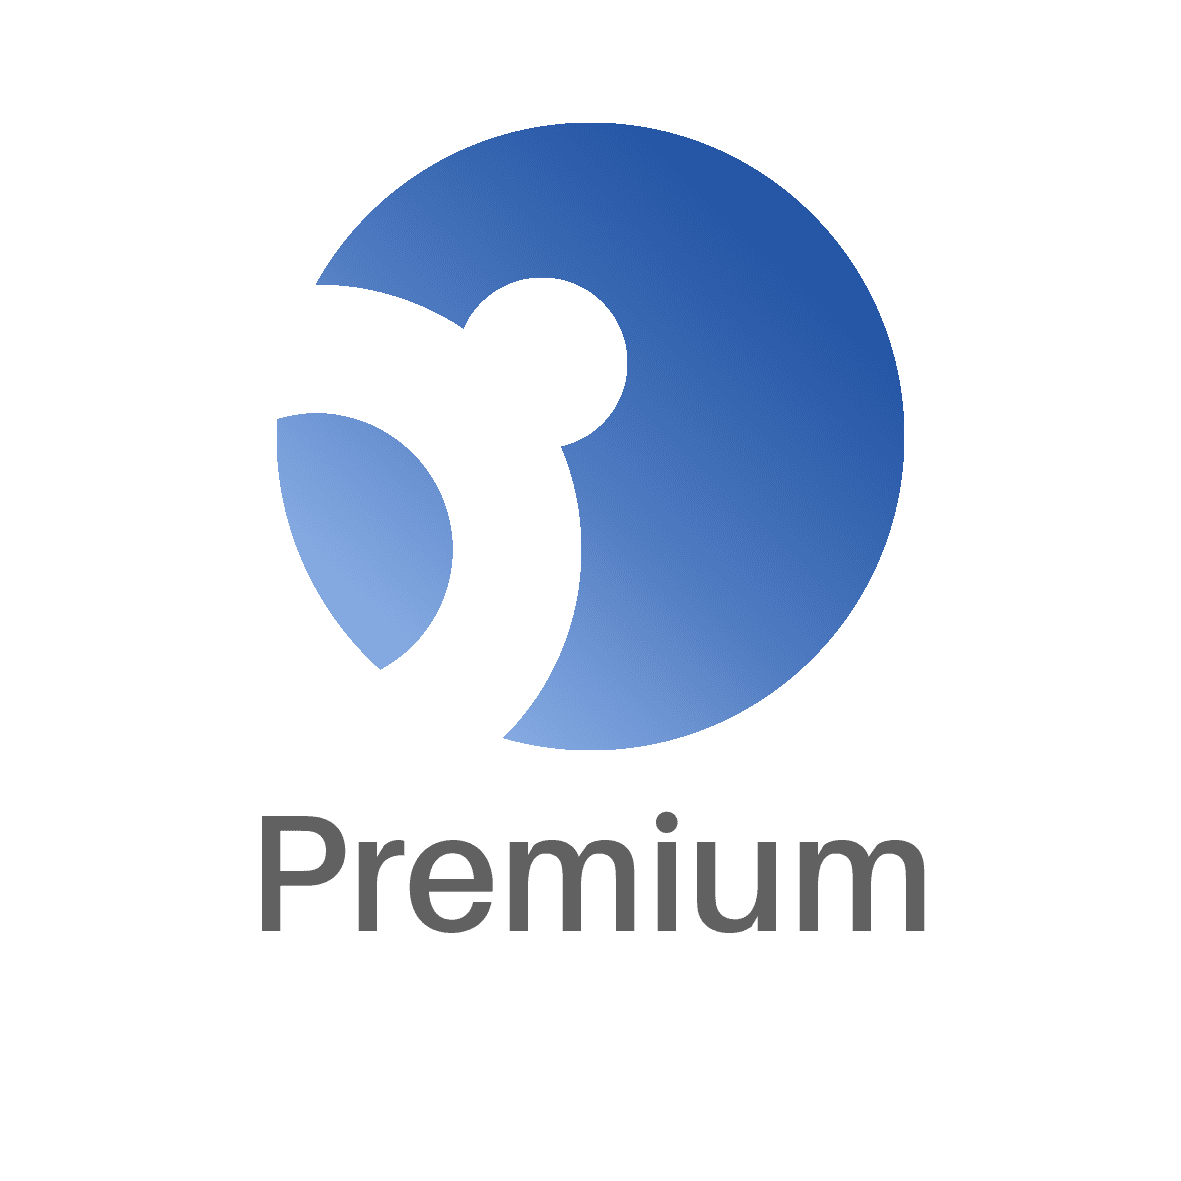 Premium